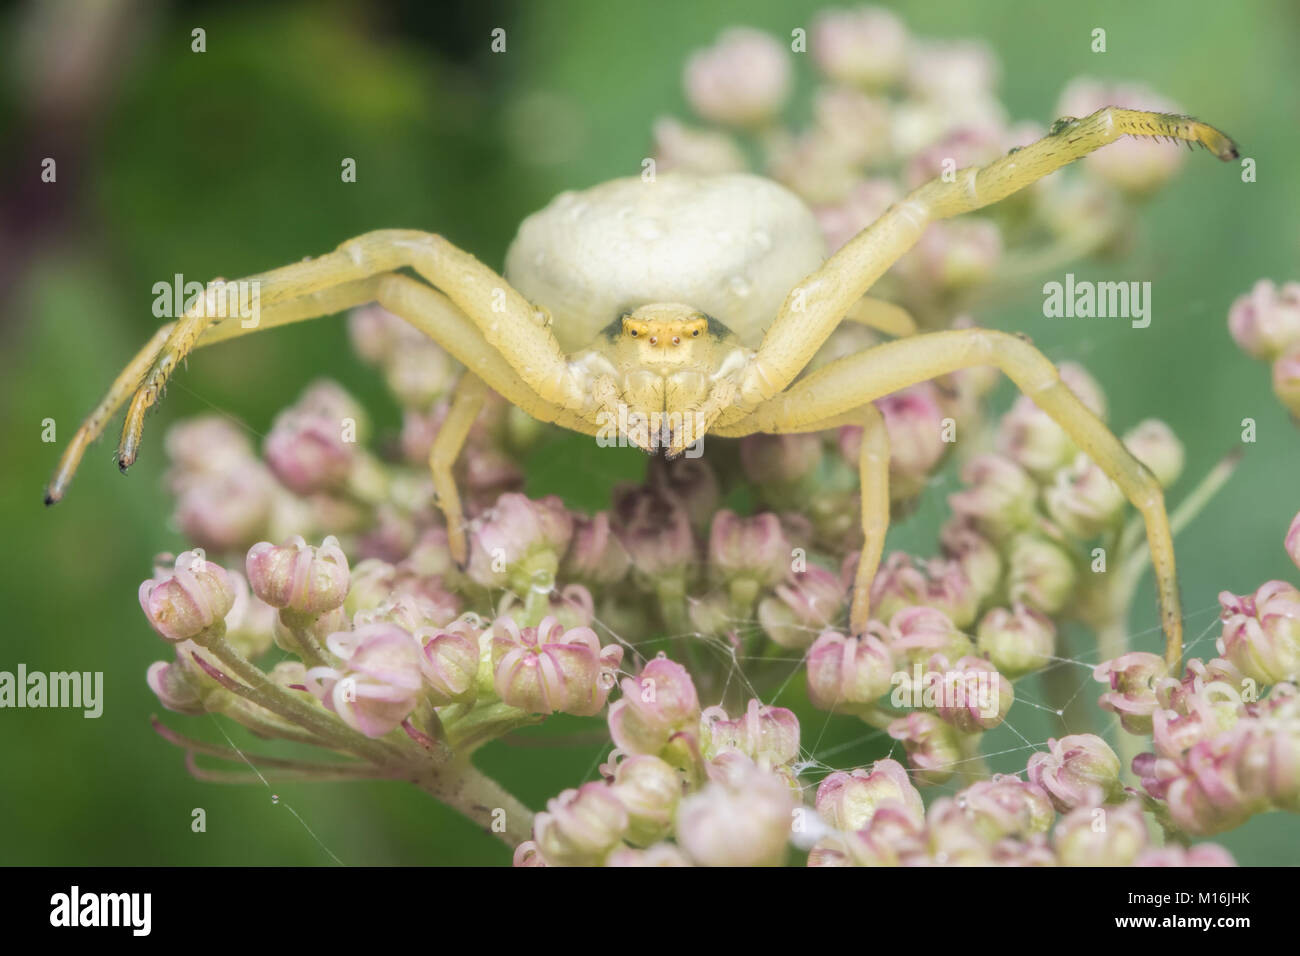 Frontalansicht einer Krabbe Spinne (Misumena vatia) im defensiven Modus auf einem umbellifer. Cahir, Tipperary, Irland. Stockfoto